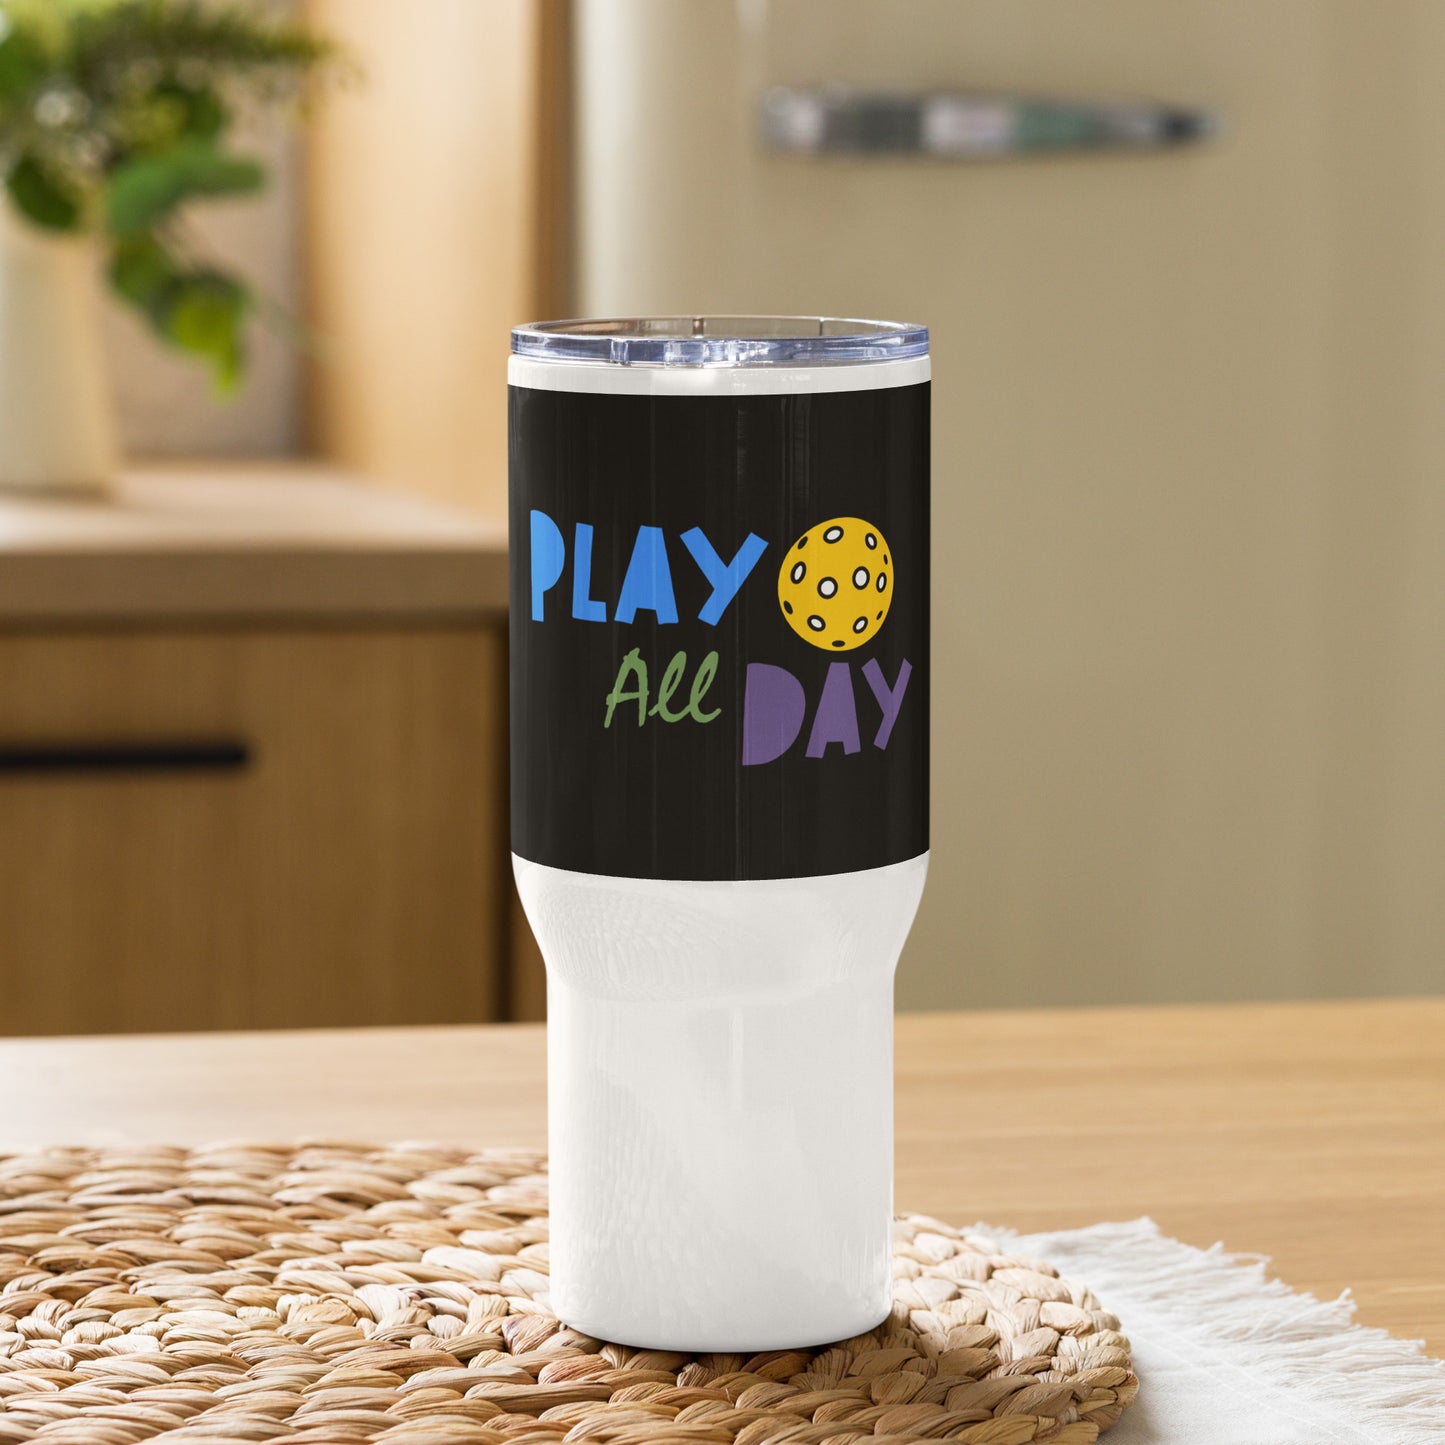 Travel mug with handle: Play All Day